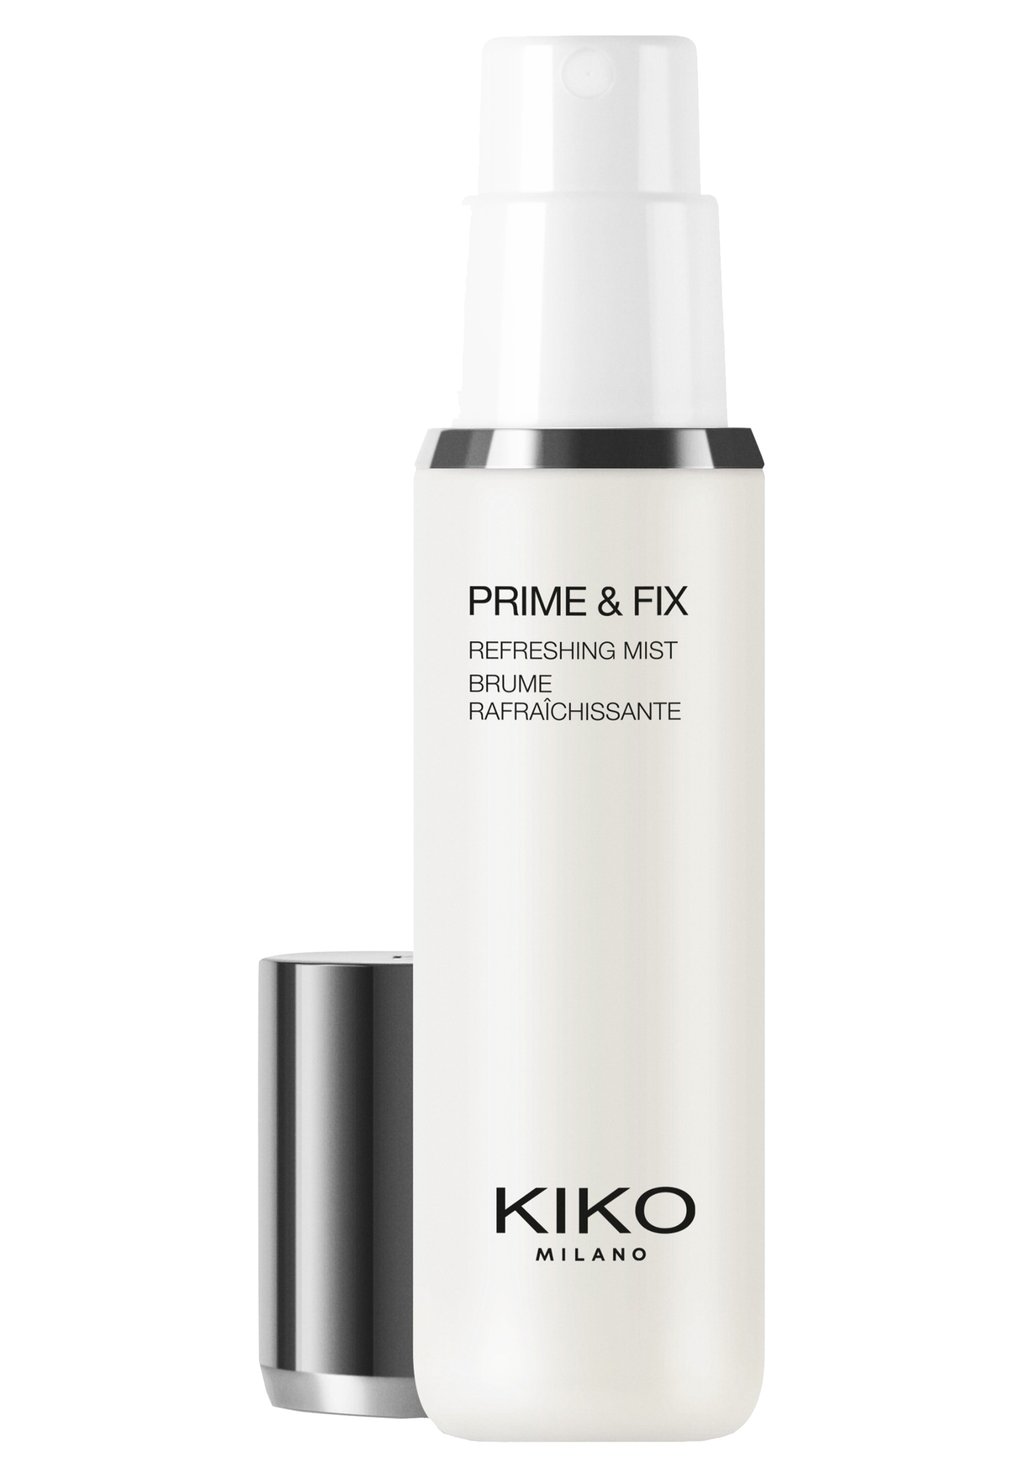 цена Фиксирующие спреи и порошки Prime & Fix Refreshing Mist KIKO Milano